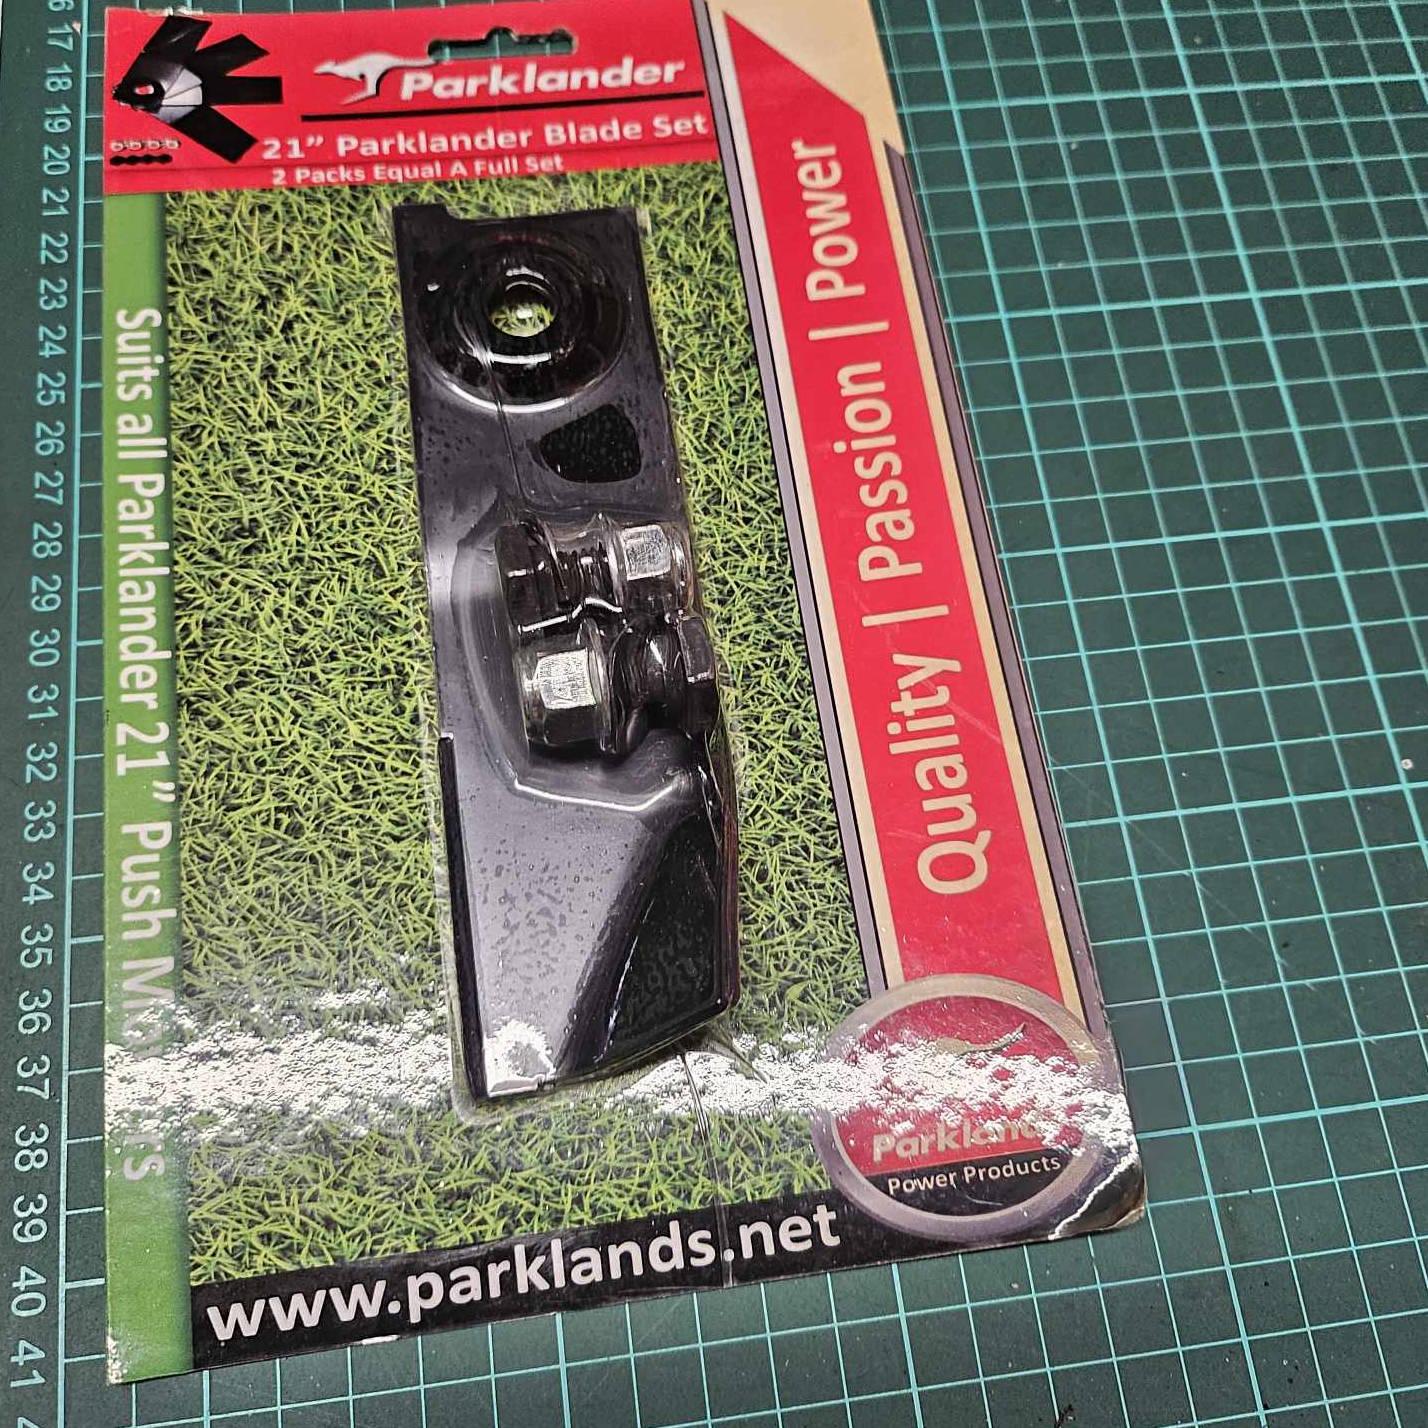 (image for) Parklander Redback Blade and Bolt Kit 21" (2 only) CJ821